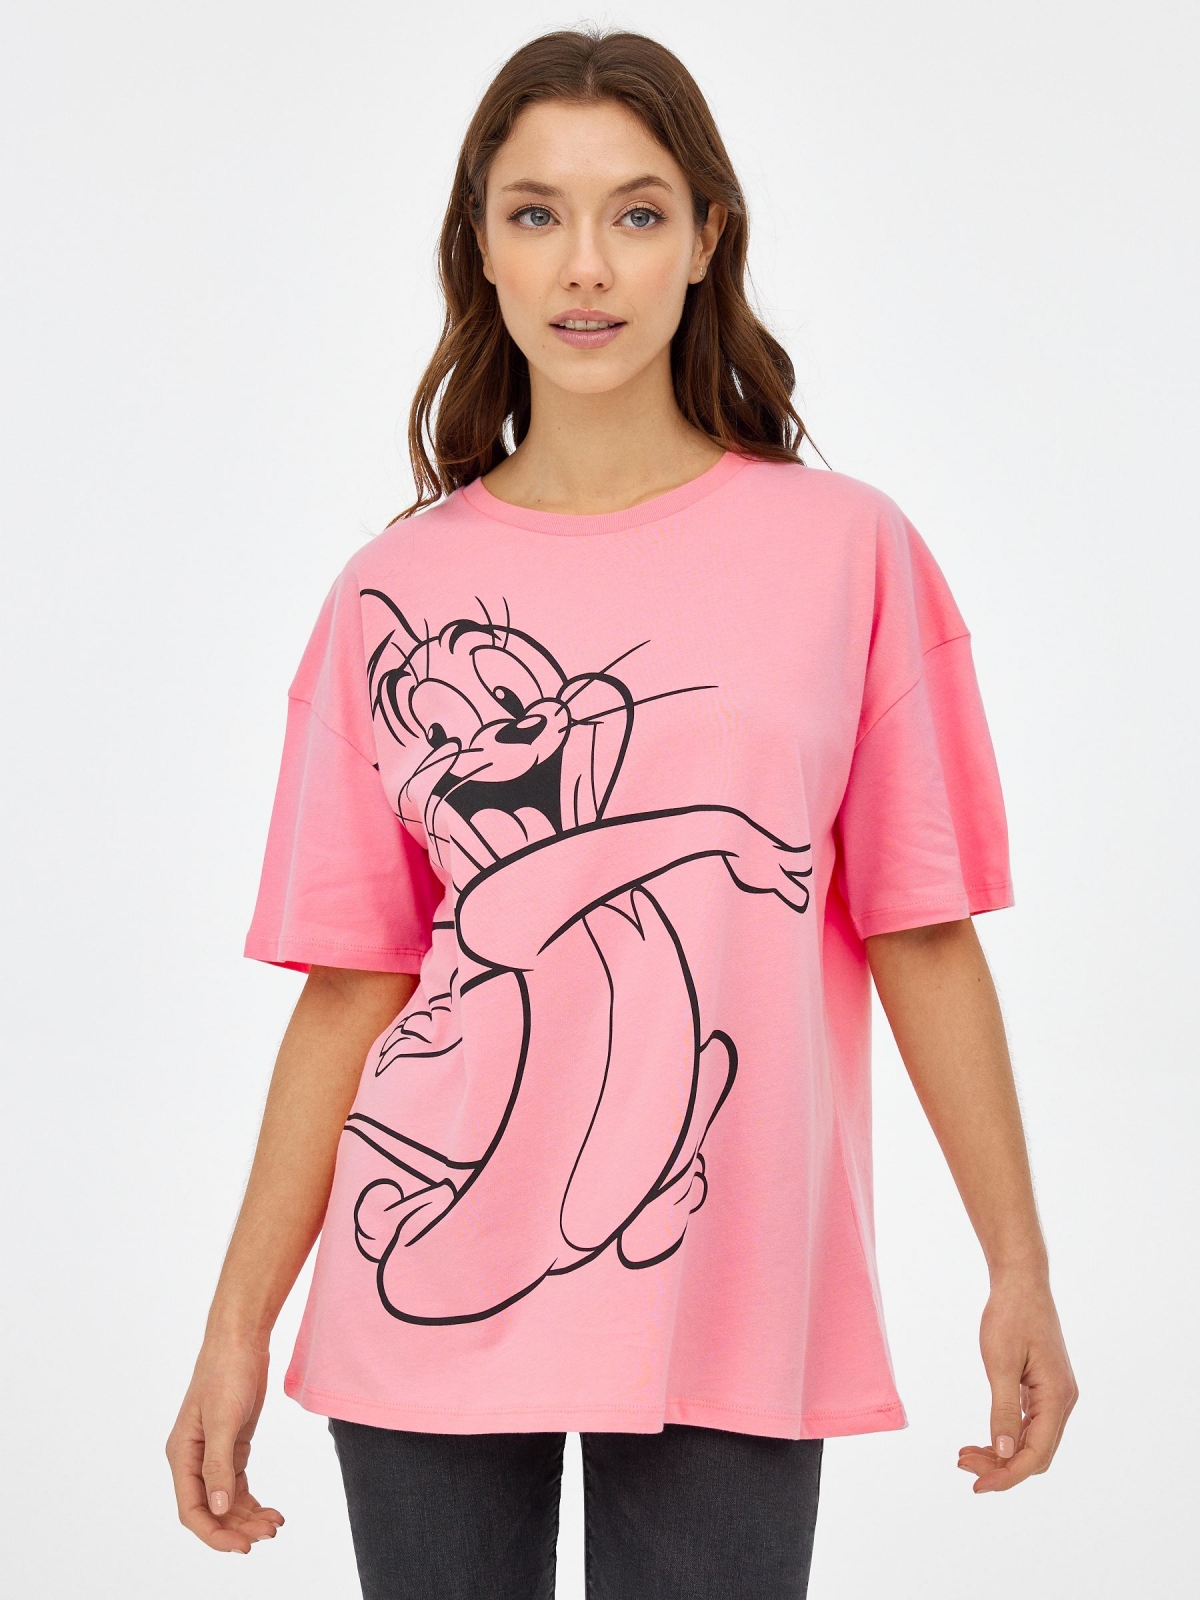 Camiseta oversized Tom & Jerry rosa claro vista media frontal